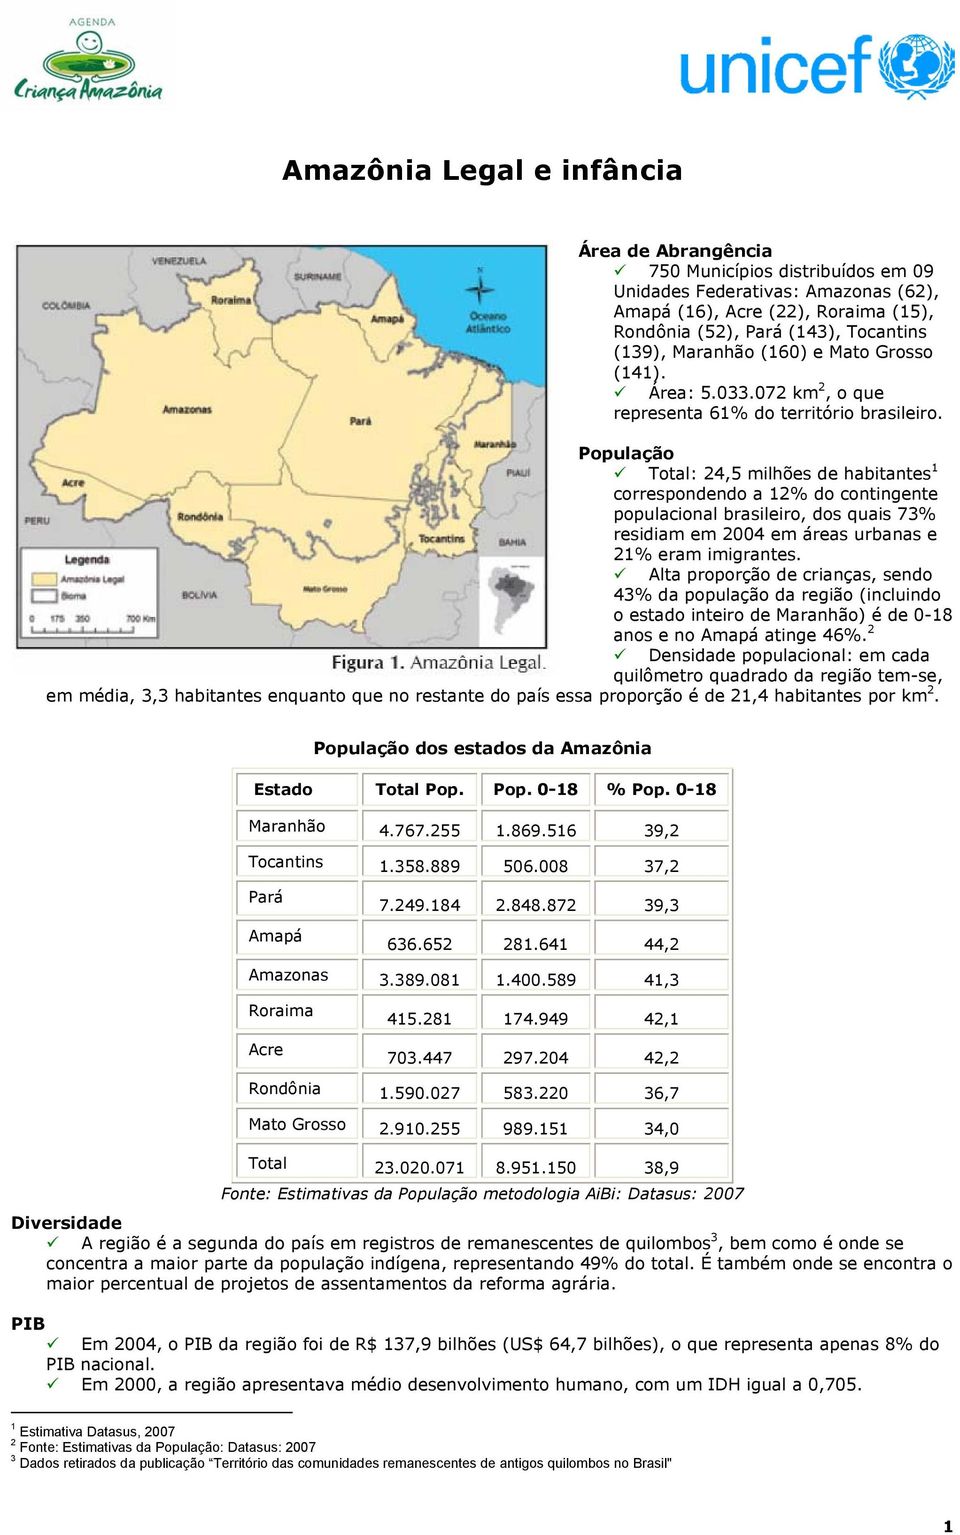 População Total: 24,5 milhões de habitantes 1 correspondendo a 12% do contingente populacional brasileiro, dos quais 73% residiam em 2004 em áreas urbanas e 21% eram imigrantes.